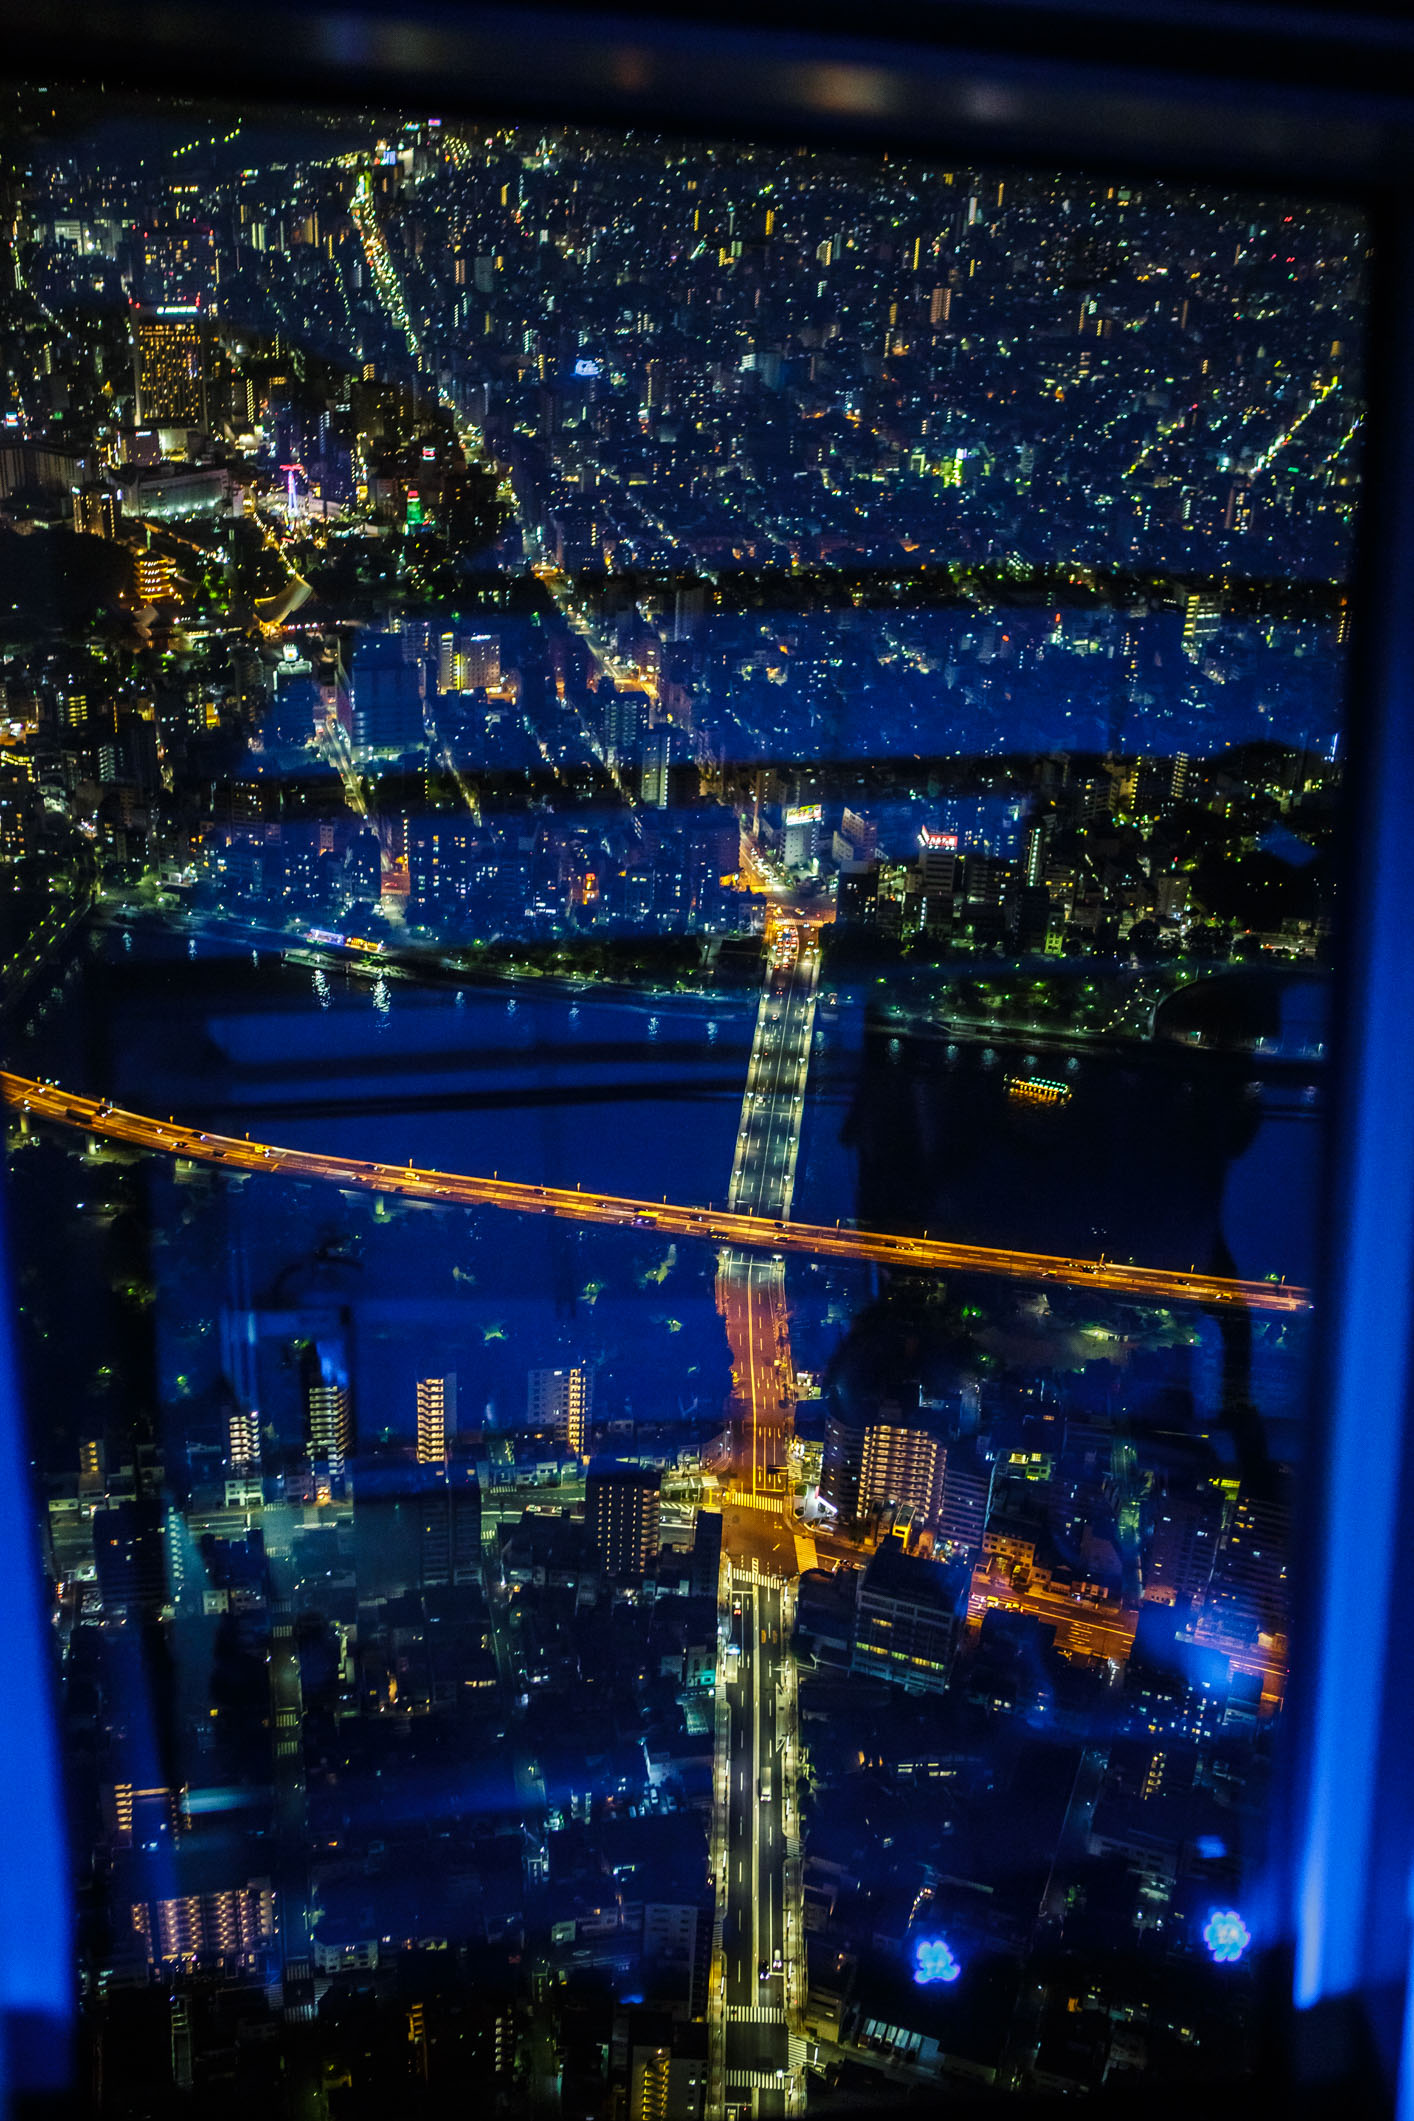 /Guewen/galeries/public/Voyages/Japon/Tokyo/Skytree-Tower/450/Skytree_39.jpg